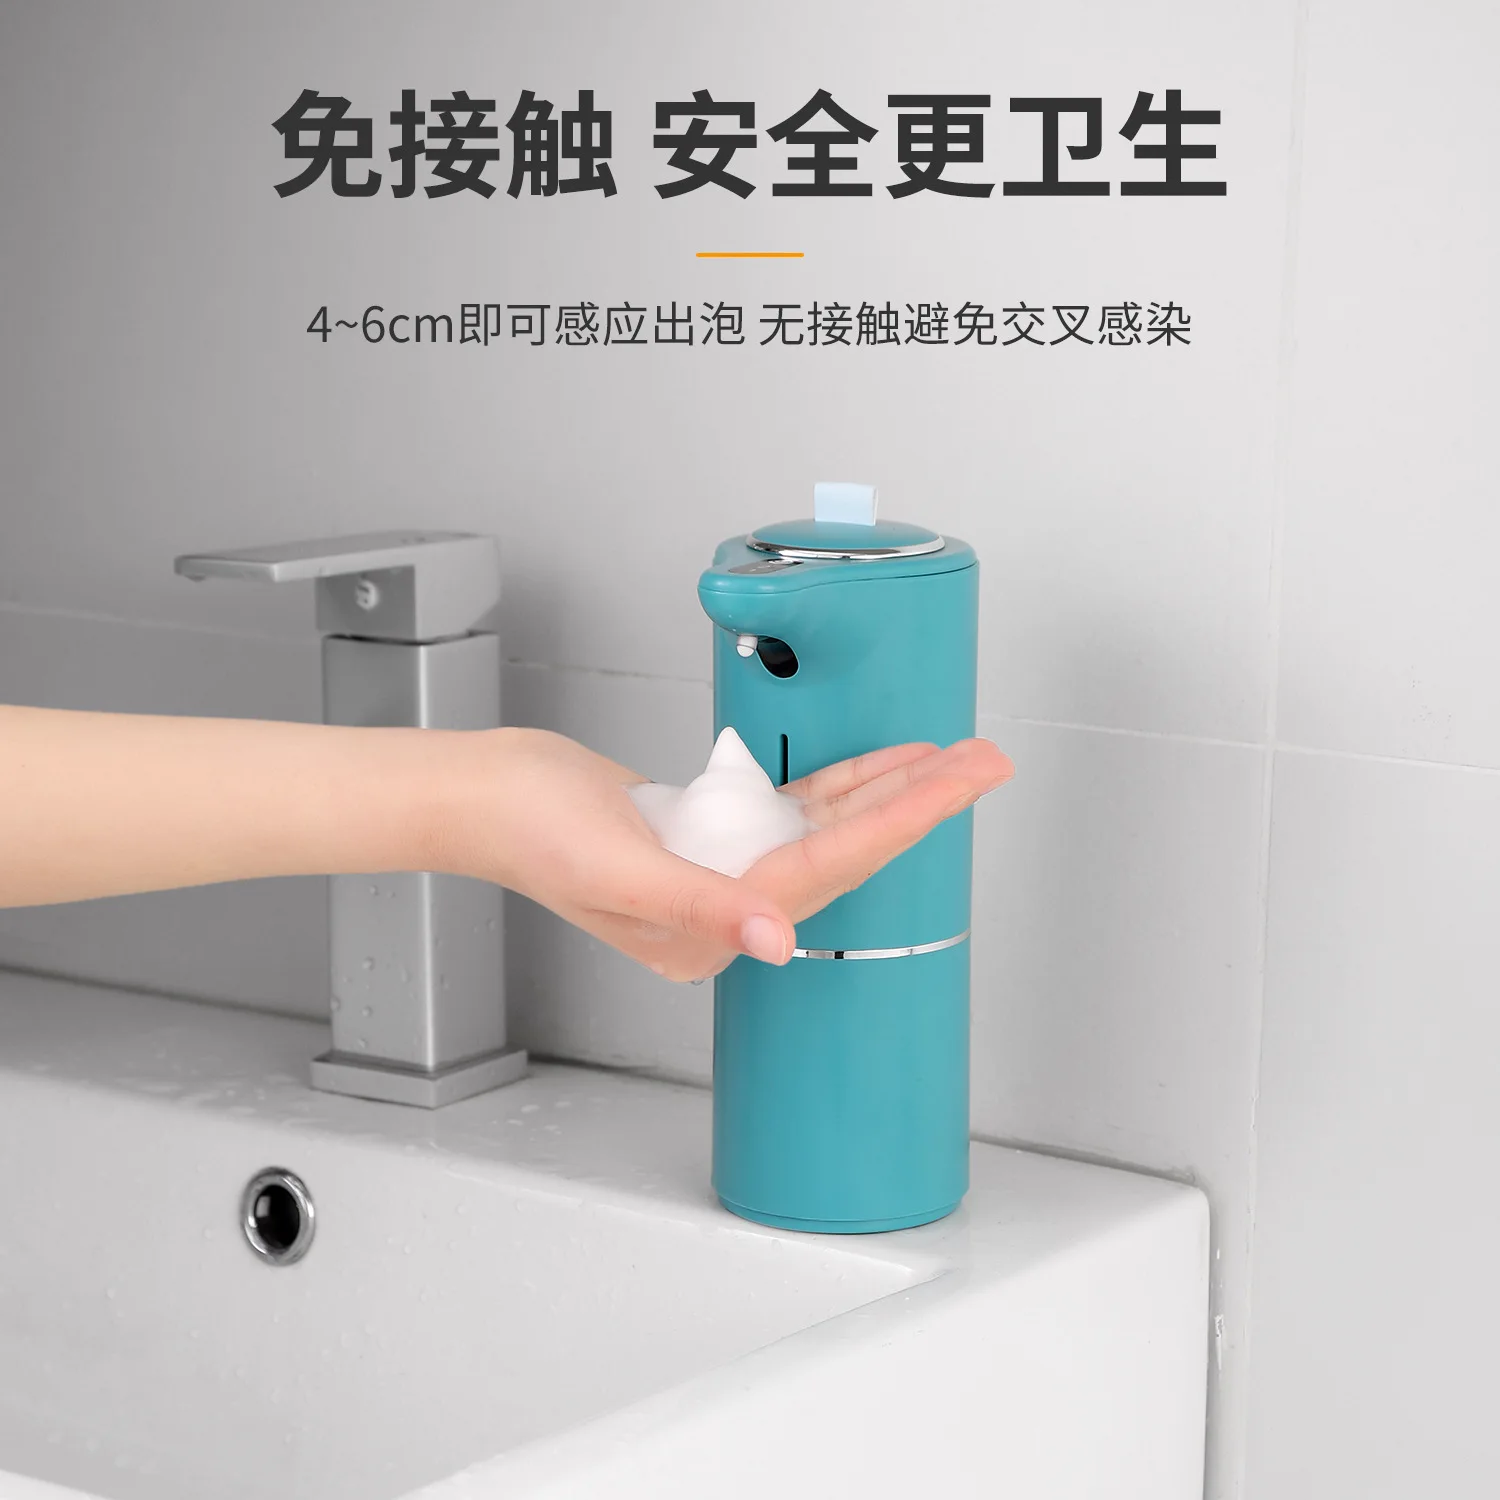 Новая интеллектуальная сенсорная пенная мойка для рук Xiaomi, водонепроницаемая бесконтактная мойка для рук для домашней ванной комнаты, кухни Изображение 1 